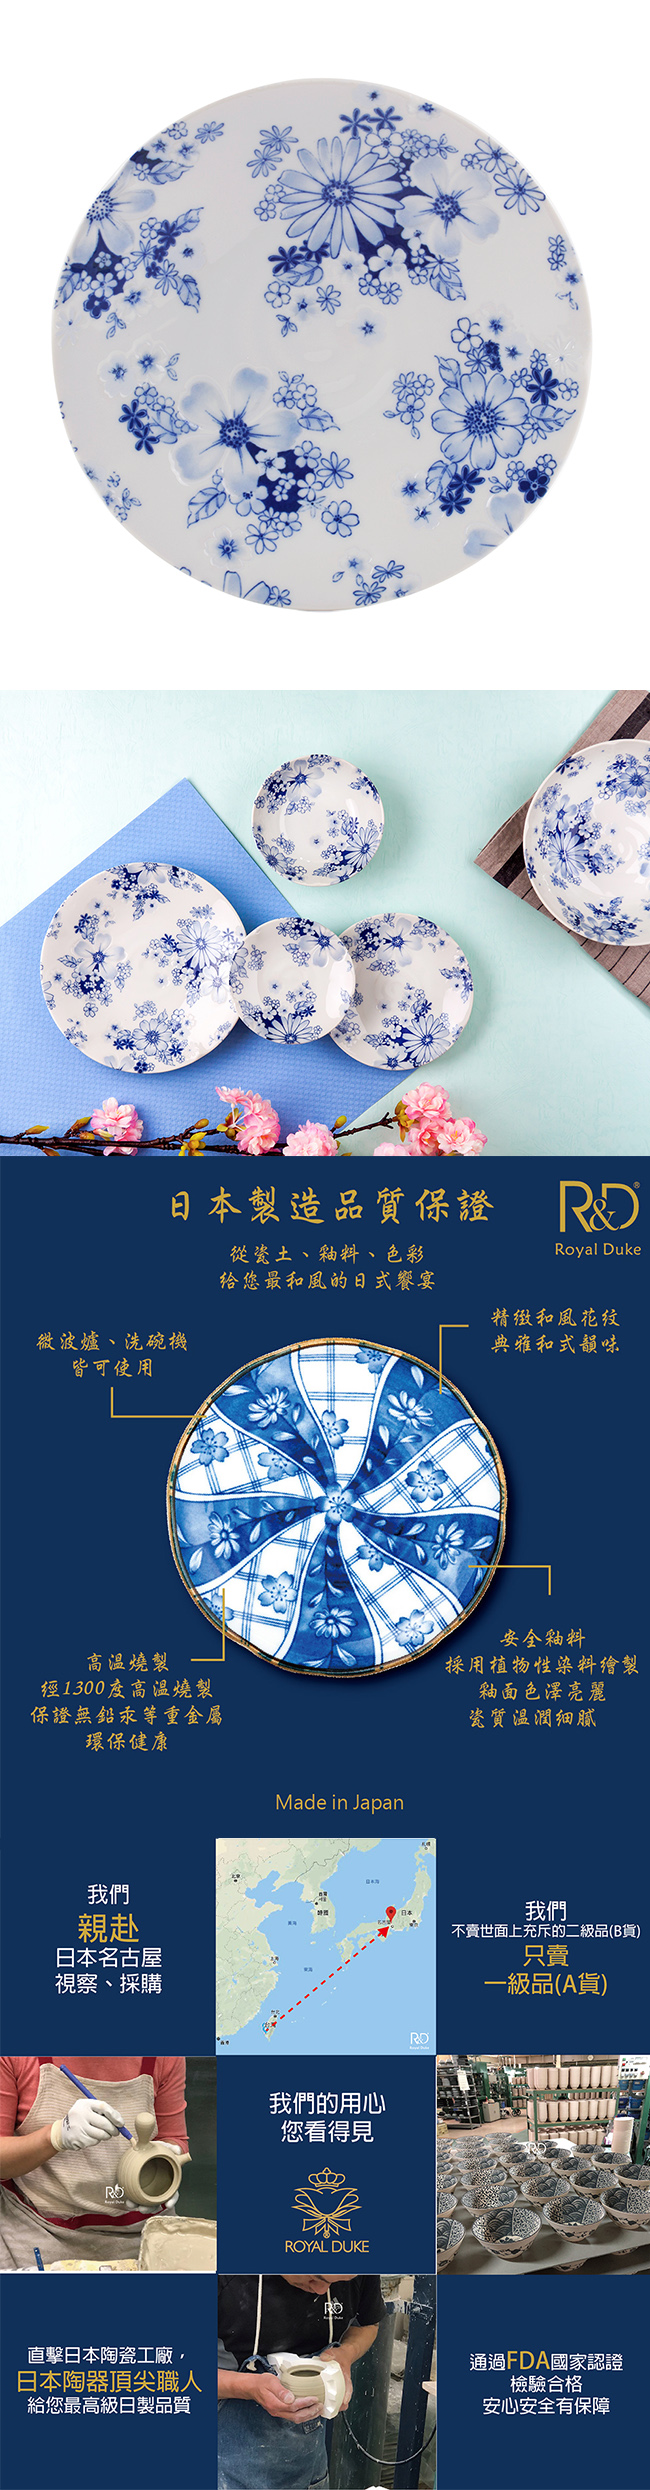 Royal Duke 日本製8吋圓盤-花集(藍色花朵)